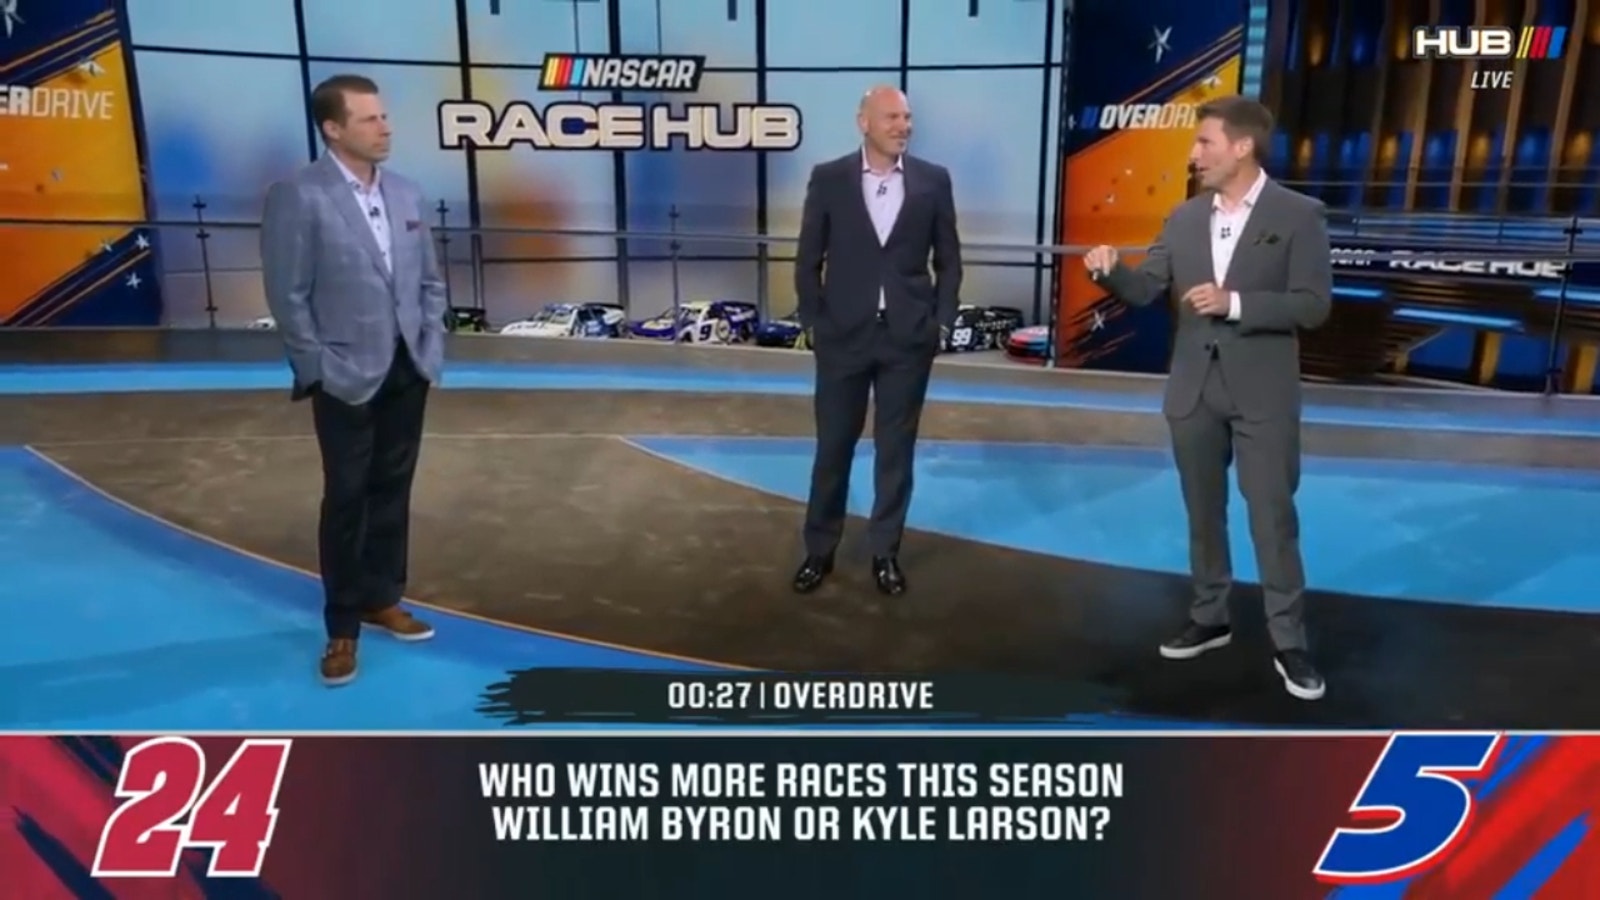 Kyle Larson o William Byron: ¿quién ganó más carreras este año? 